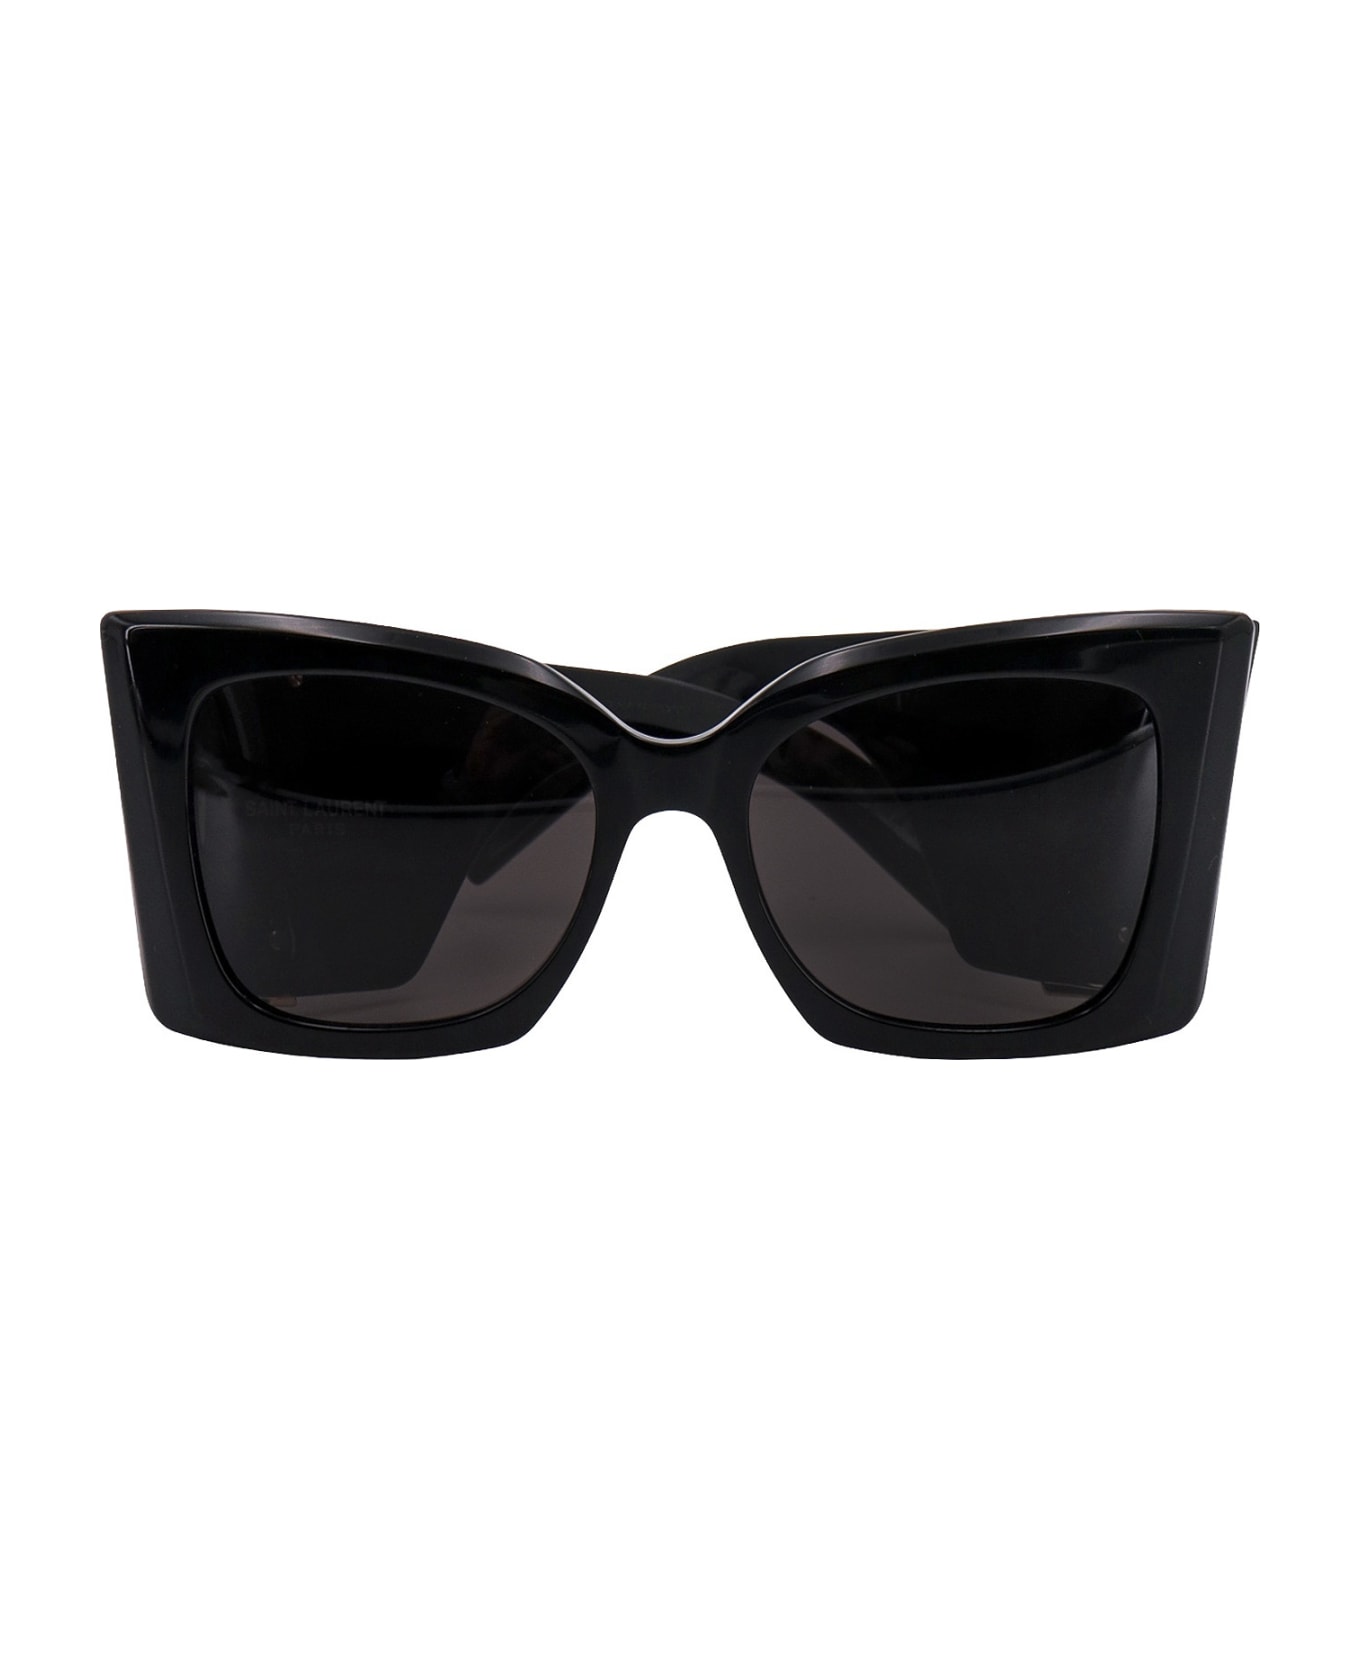 Saint Laurent Eyewear Sunglasses - Black